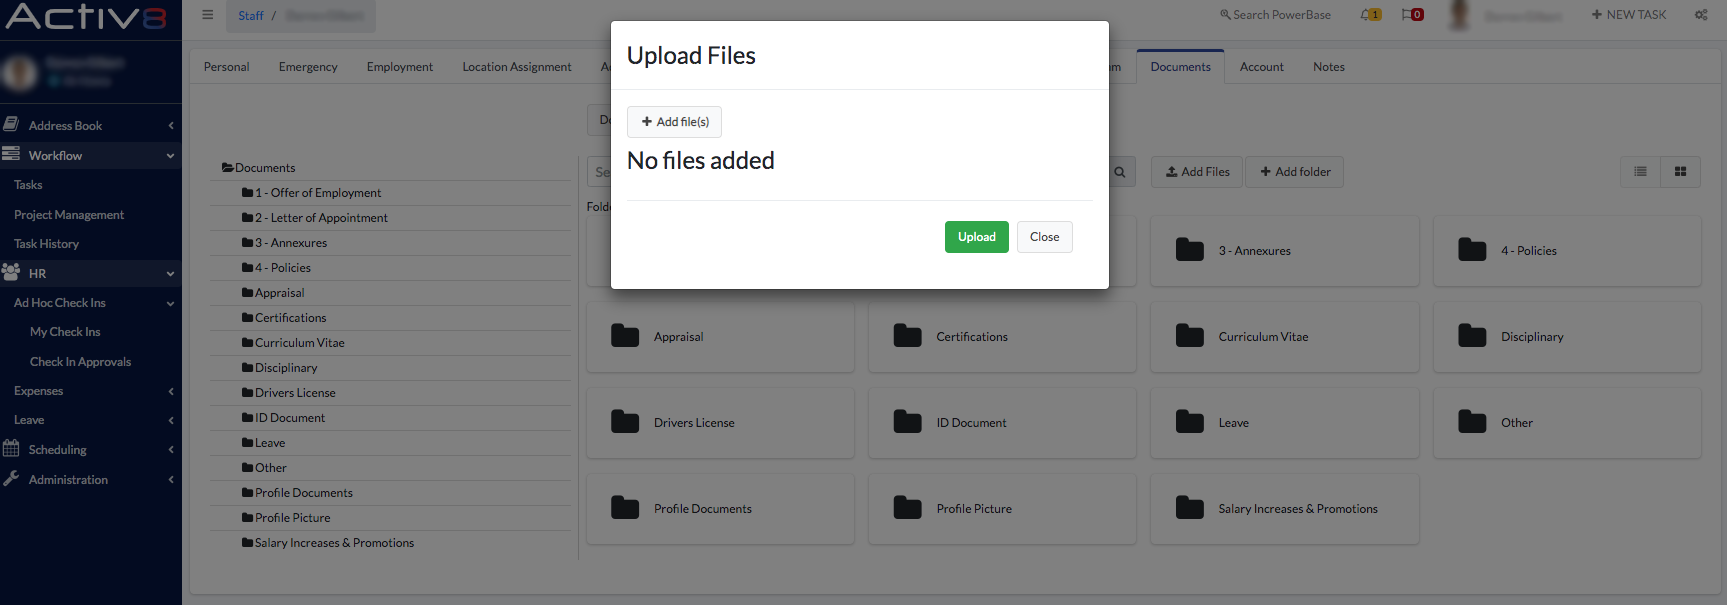 Upload Files - Activ8